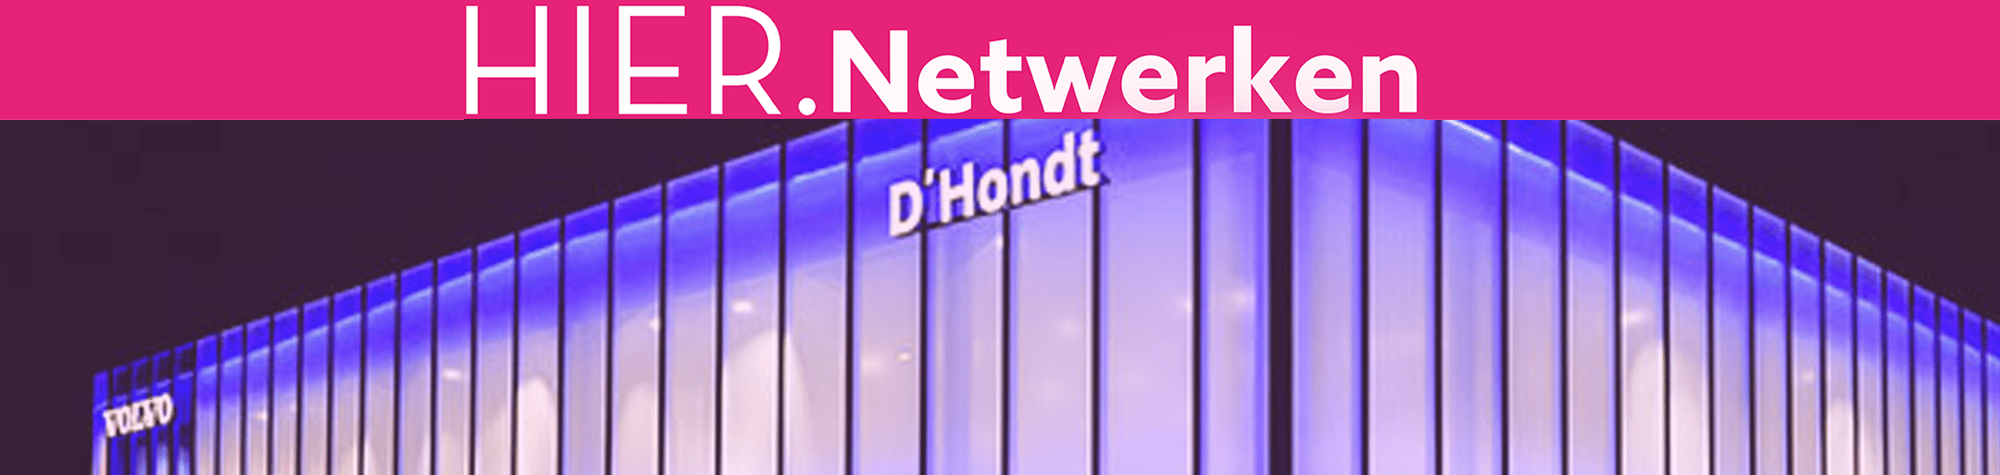 Hier. Netwerken bij Volvo D’Hondt Aalst